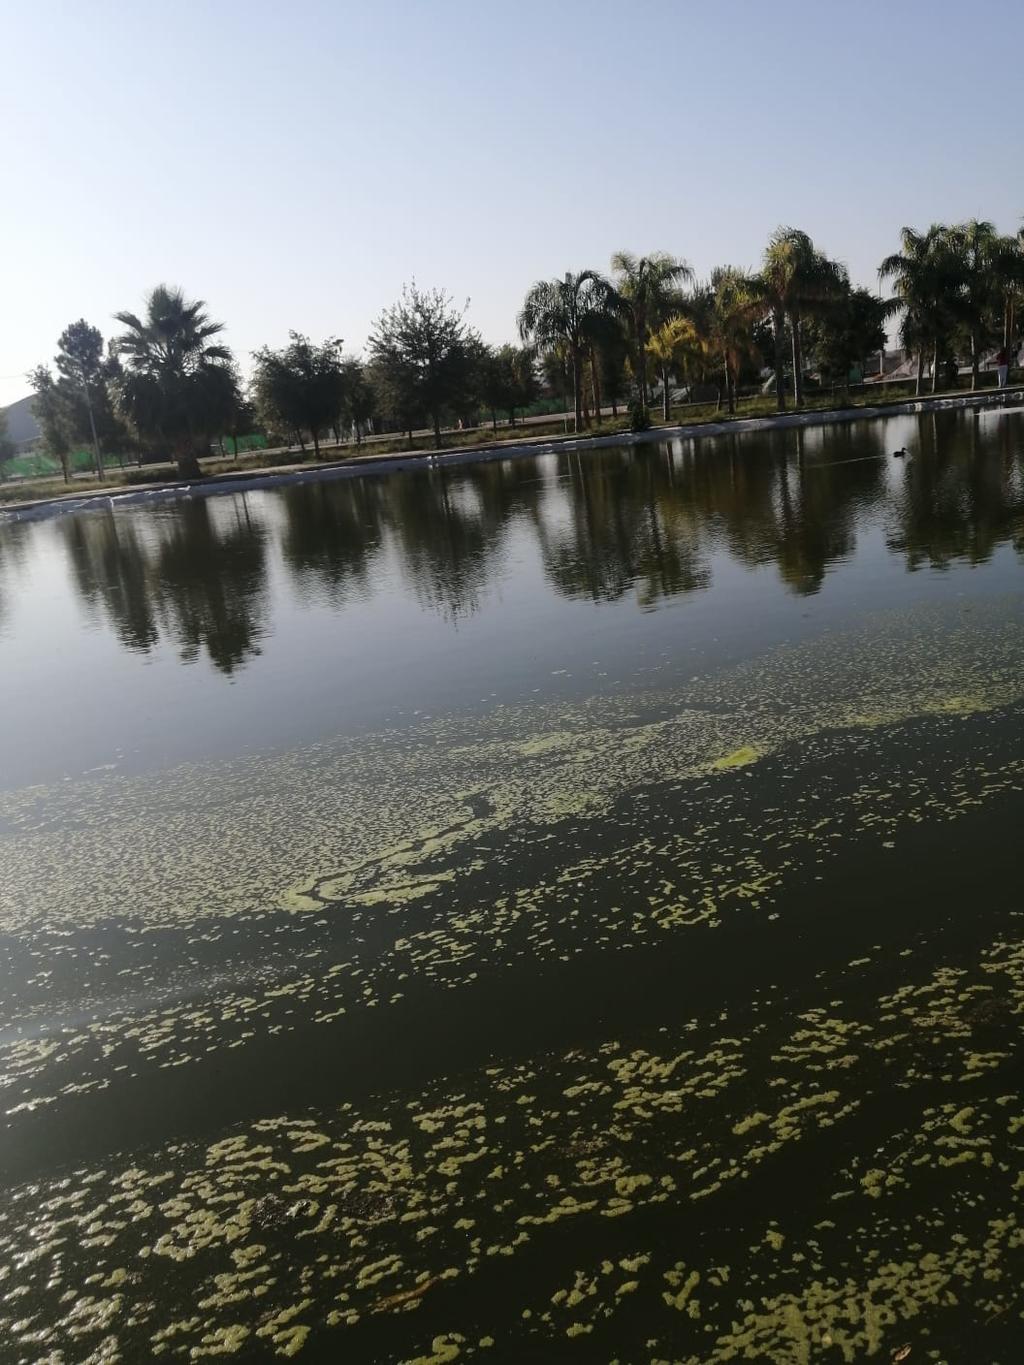 Lagos. Se dio a conocer que los lagos del parque ya están recibiendo mantenimiento y se mantienen limpios. Piden no arrojar basura.